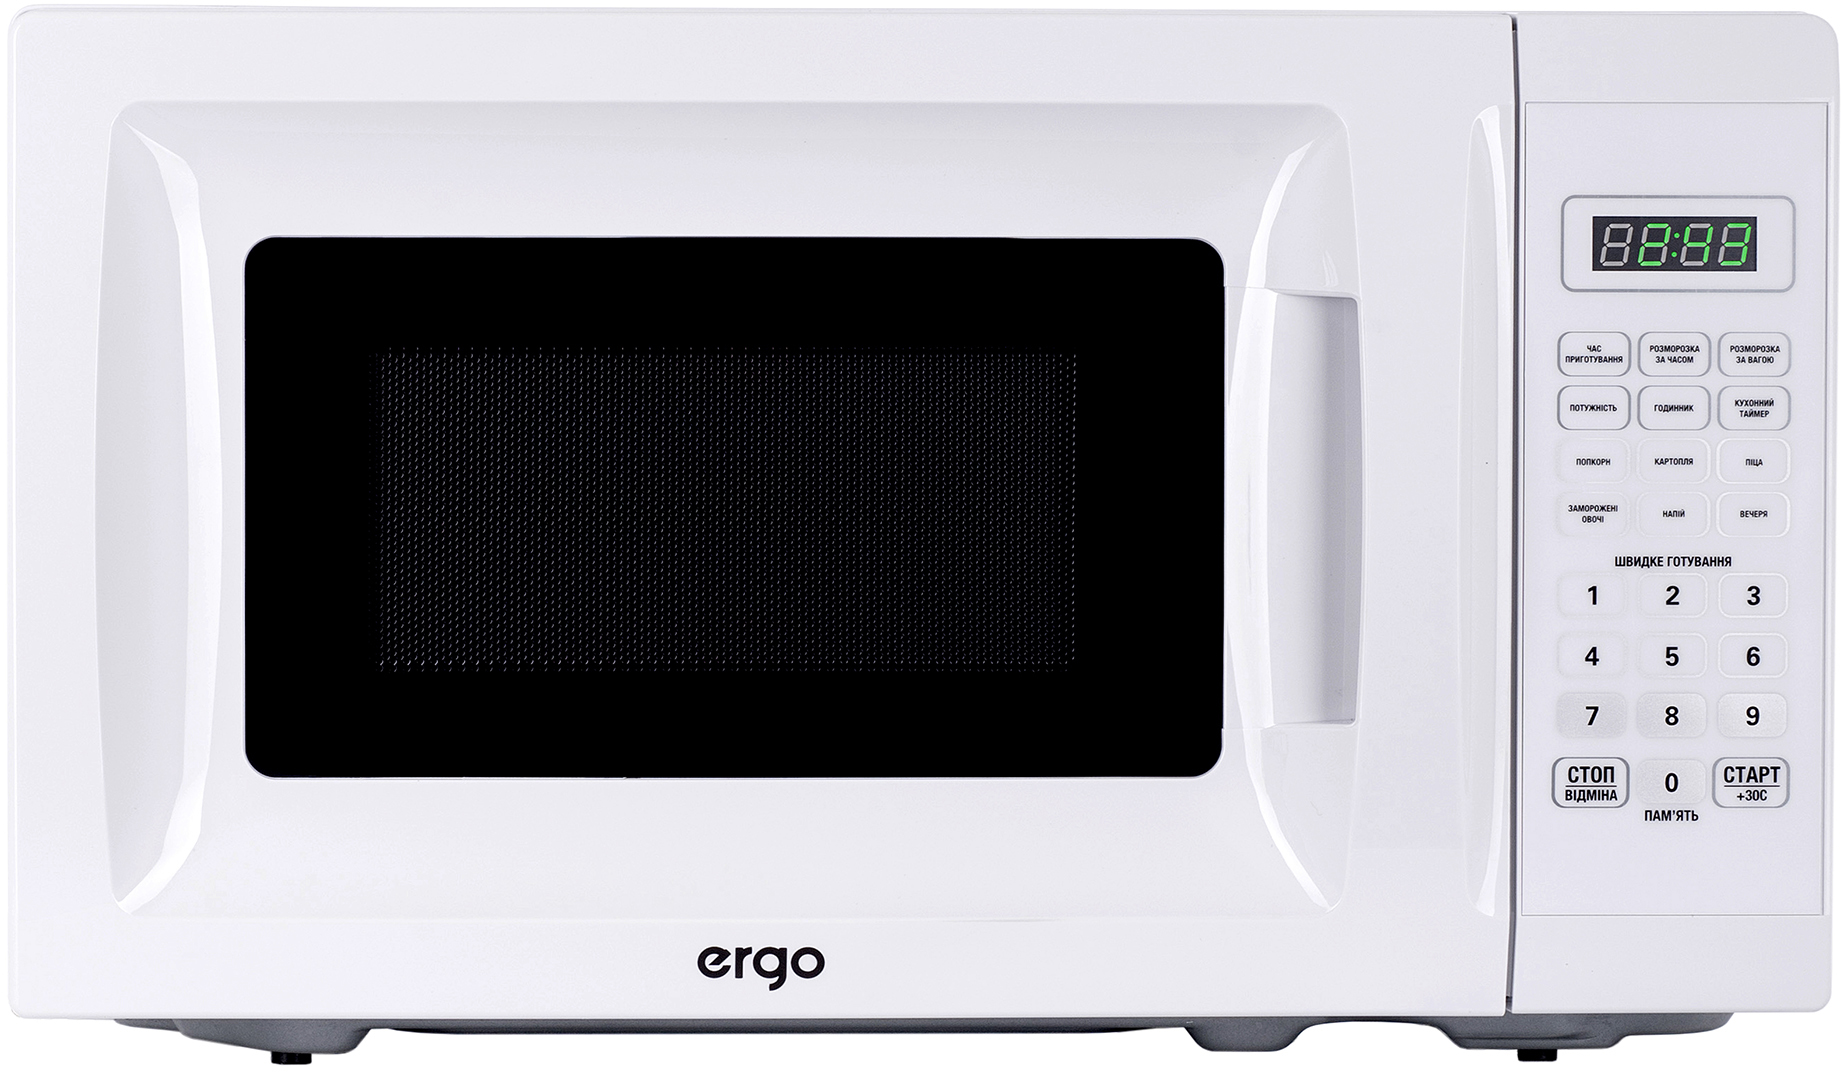 Ergo EM-2005